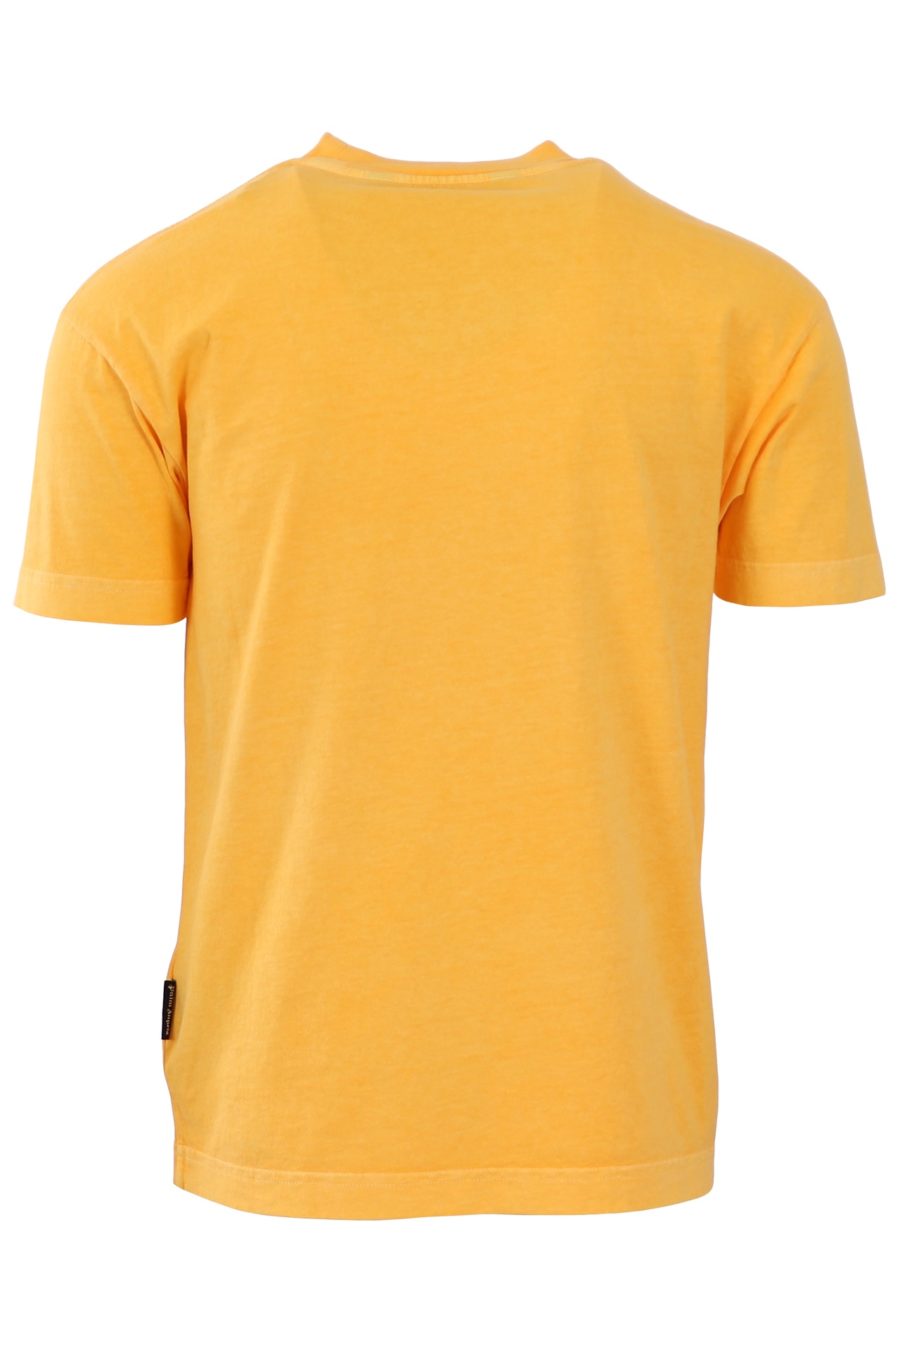 T-shirt Palm Angels gelb logo grün - 8e57556cbe0ec34b1ea81560a1f58d9c80d5ec90